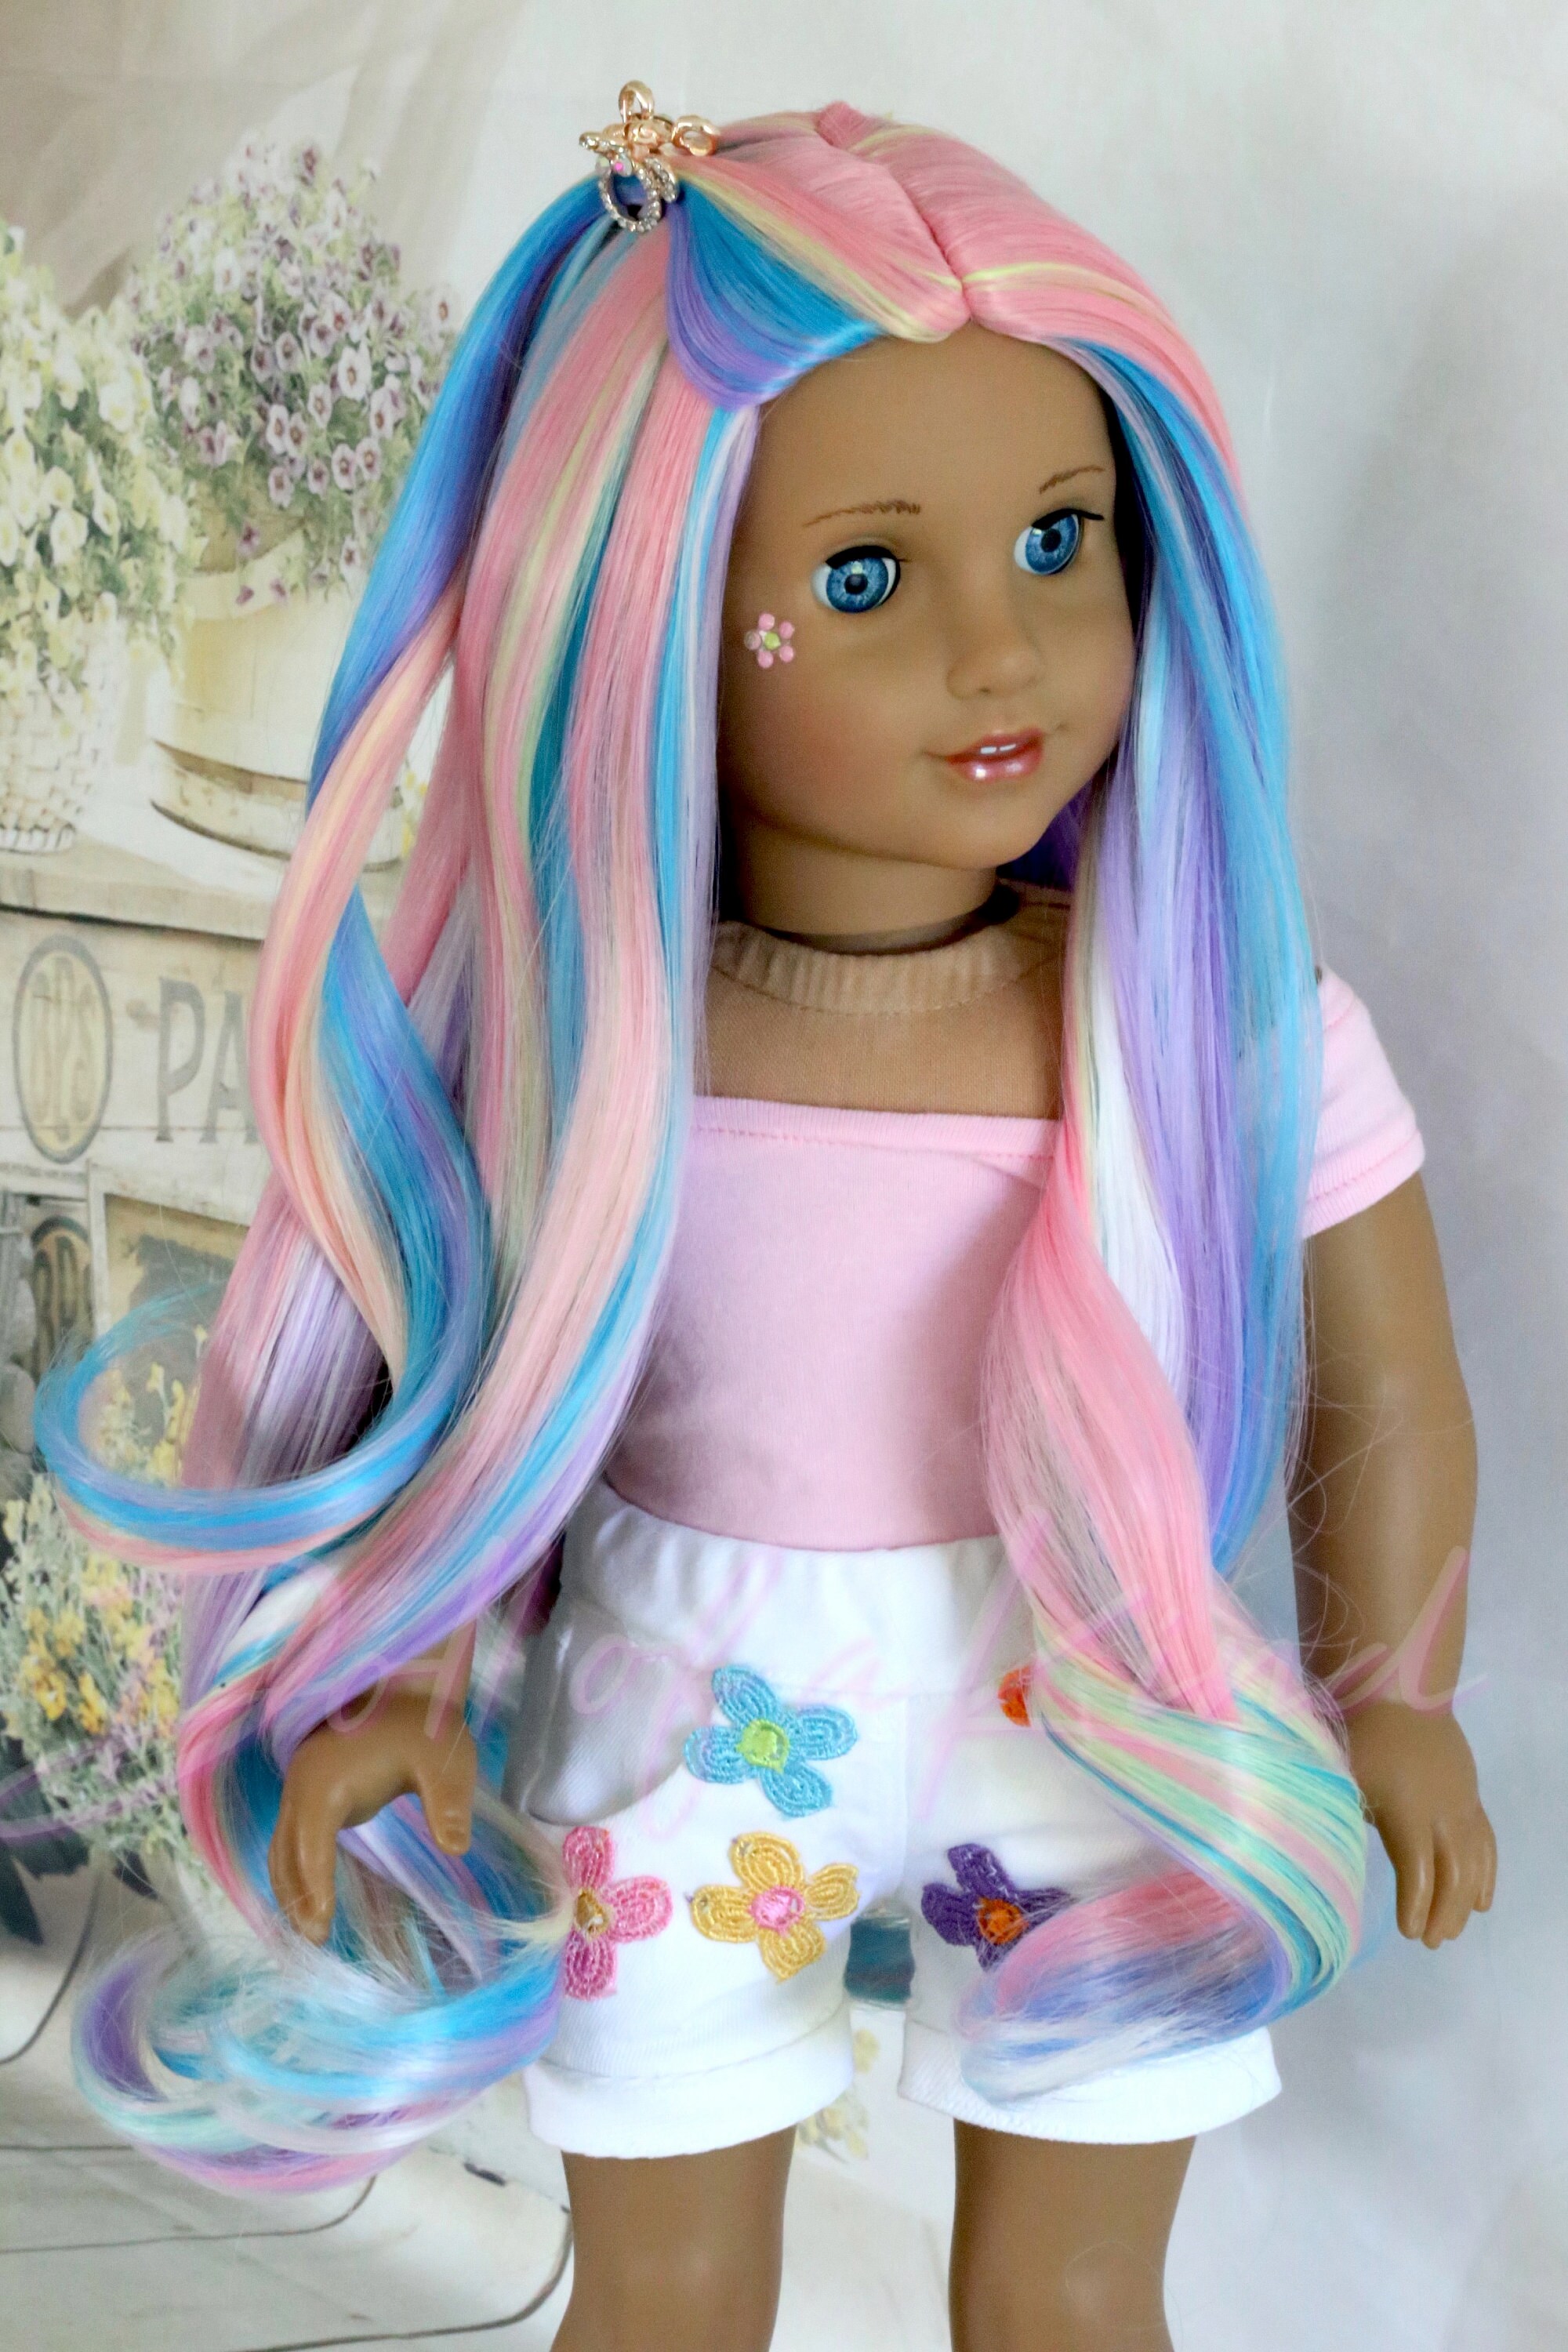 Studio de coiffure Rainbow High : créez des cheveux arc-en-ciel avec la  poupée exclusive et la couleur lavable pour cheveux 